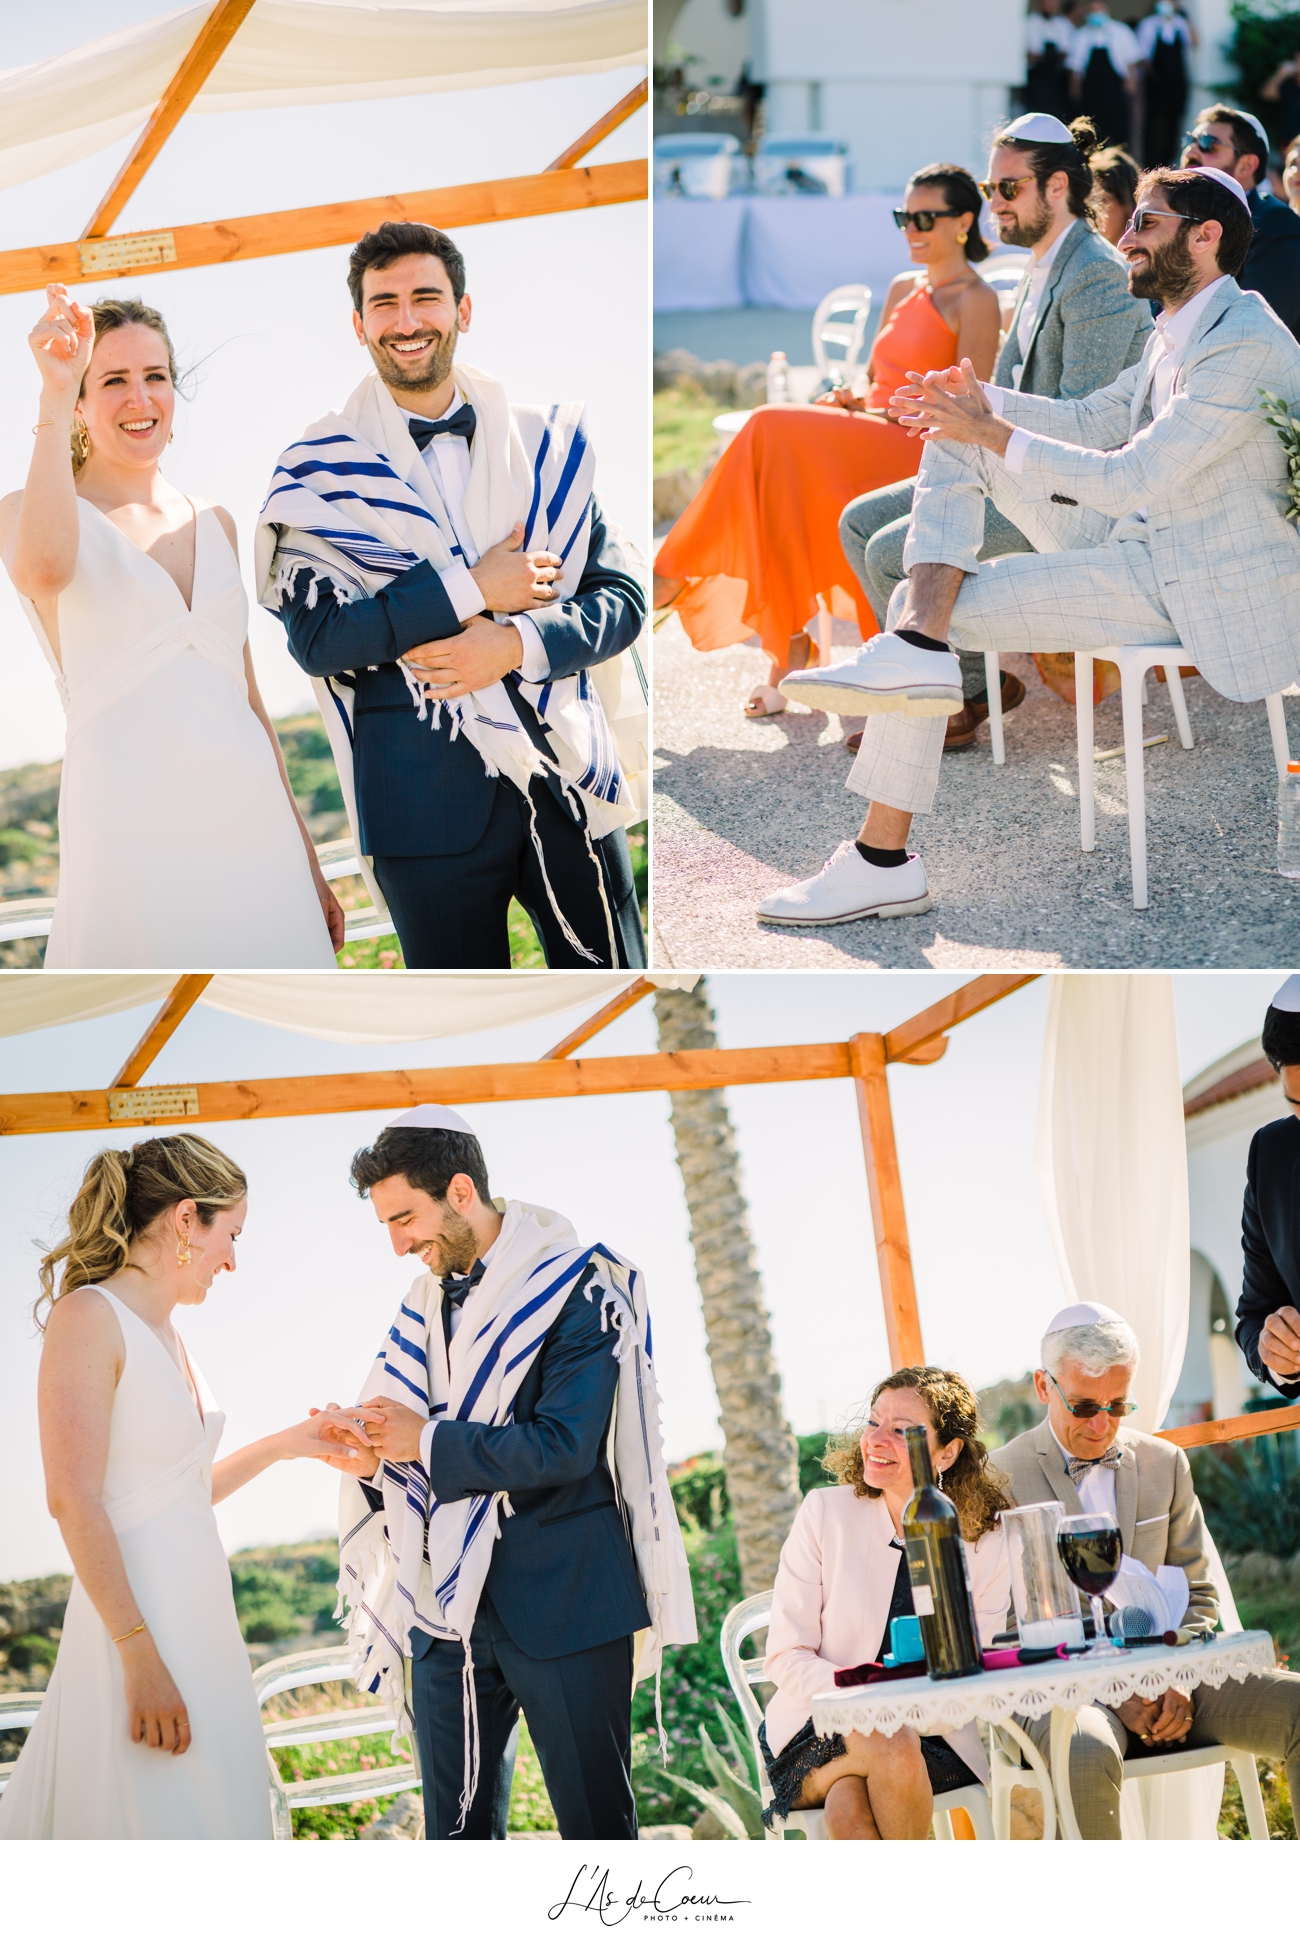 Photographe mariage santorin cérémonie juive